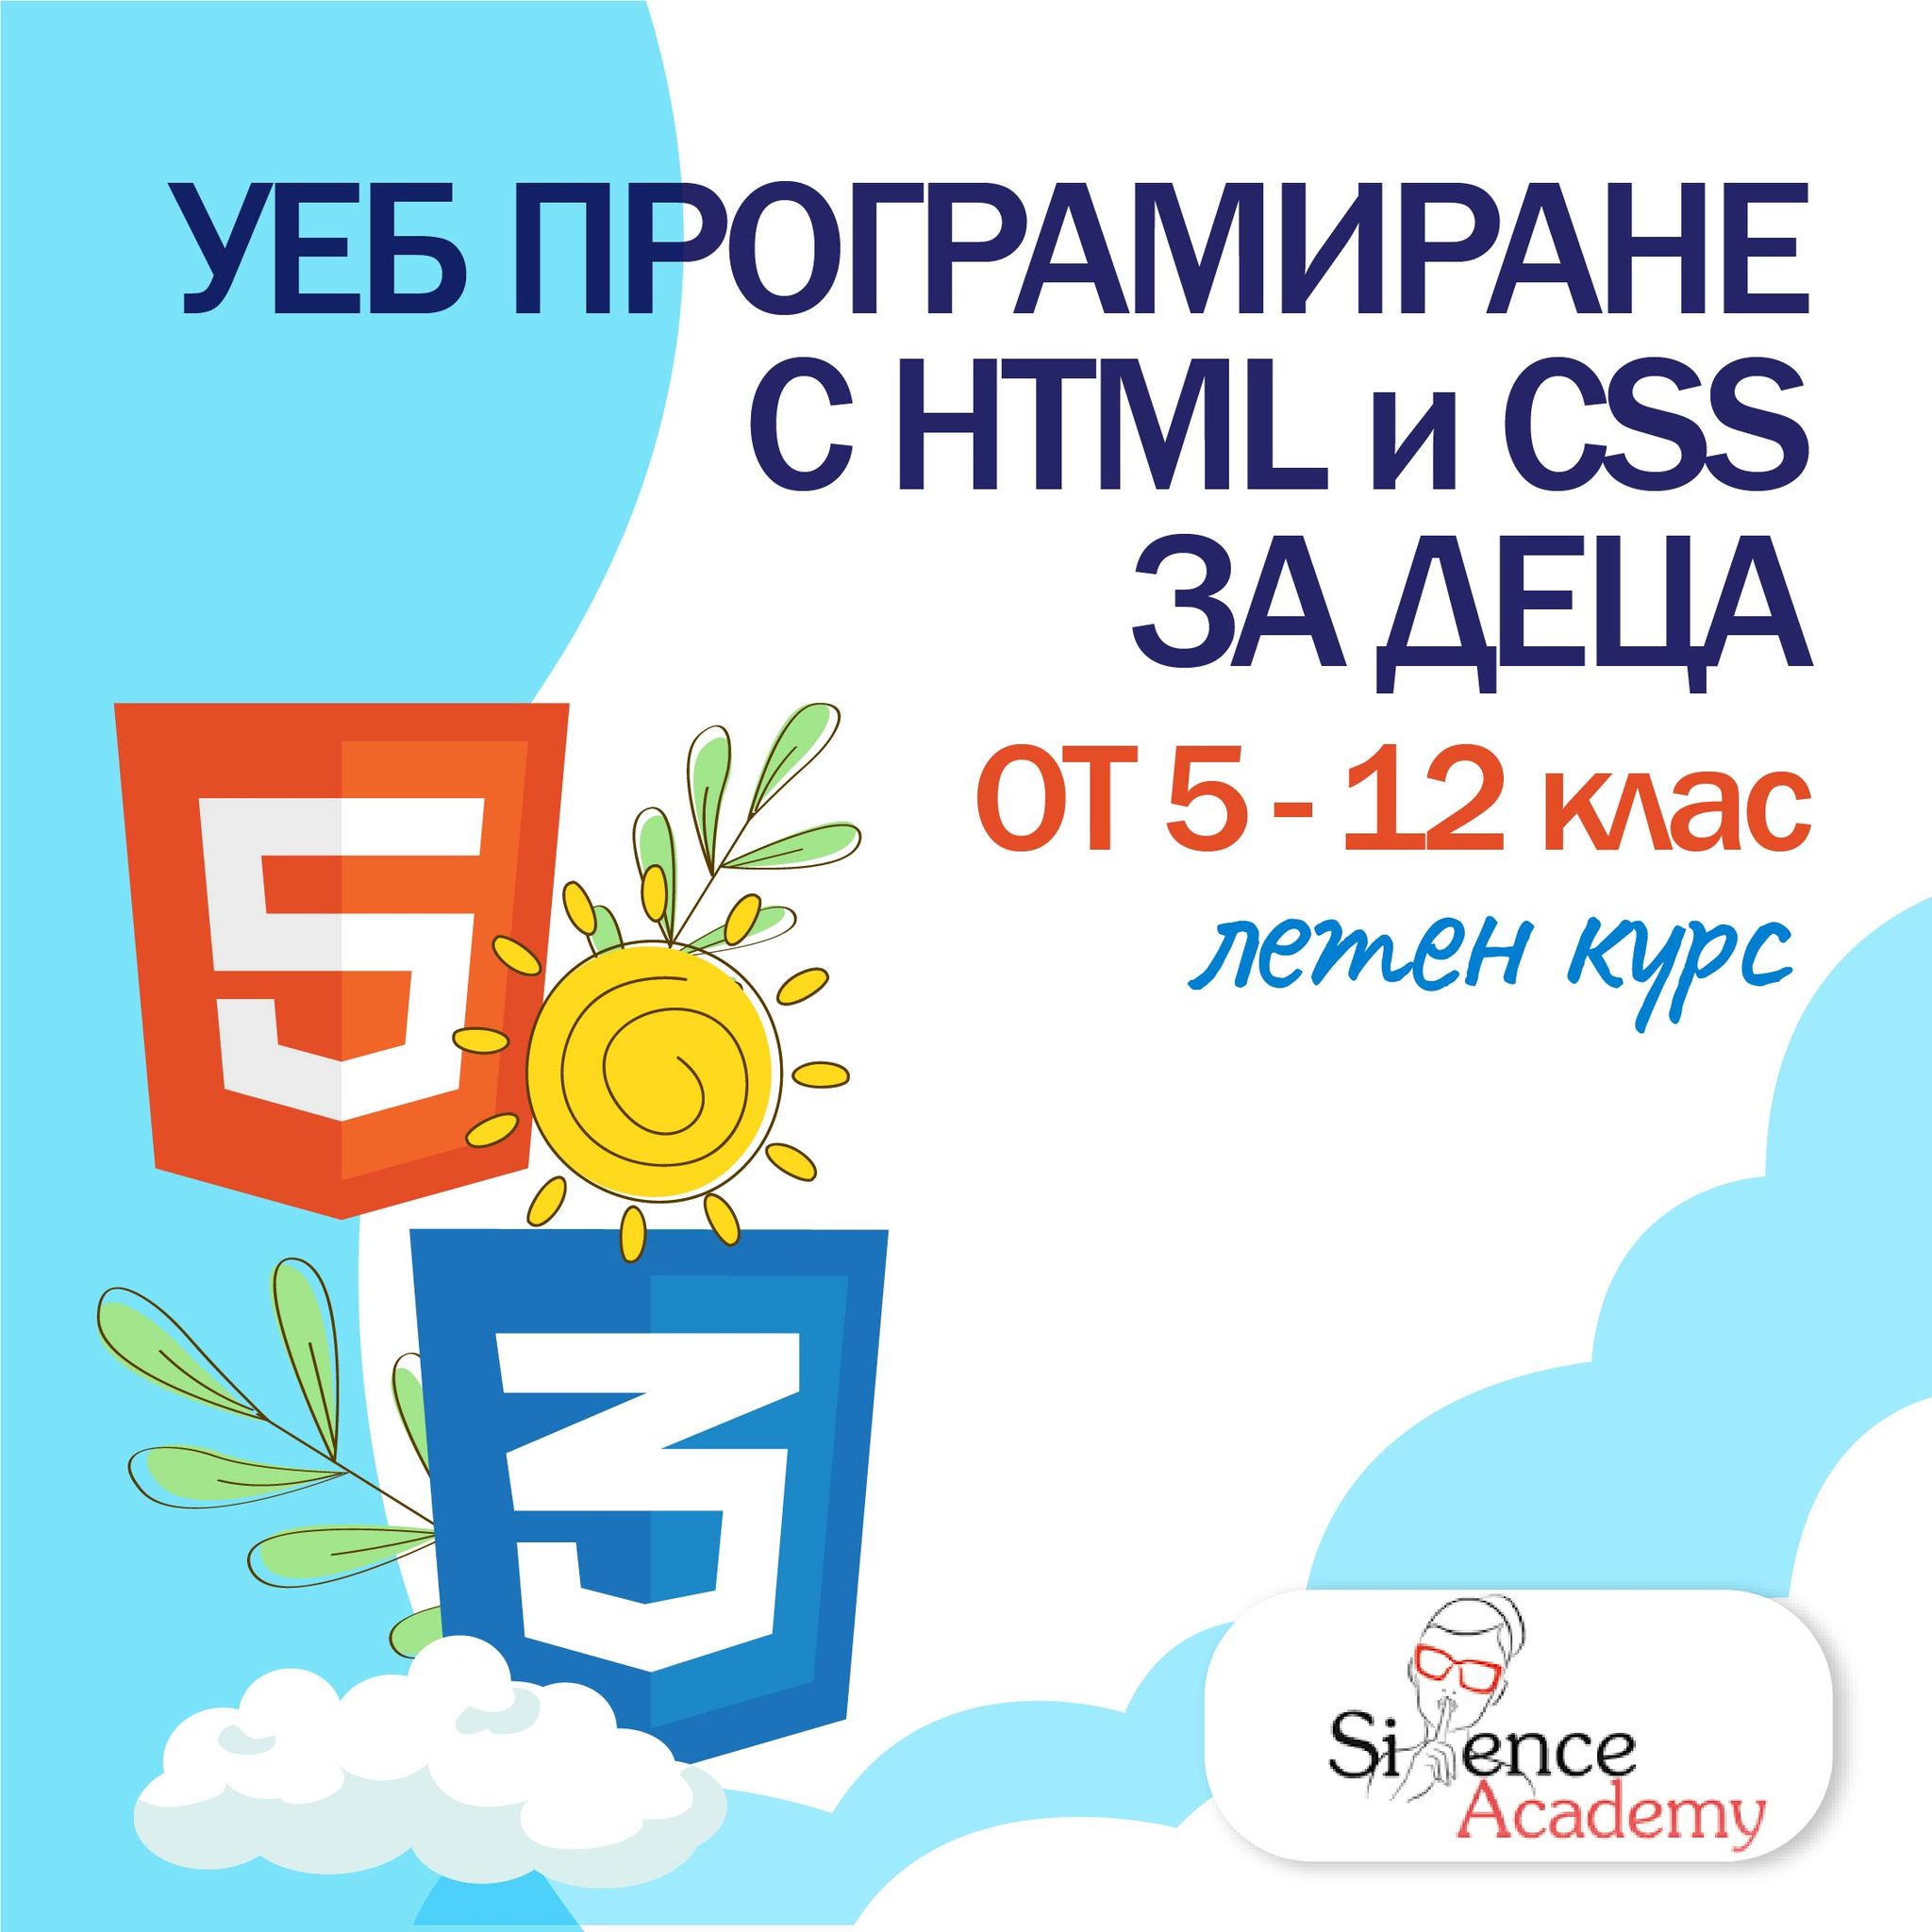 Програмиране С HTML и CSS